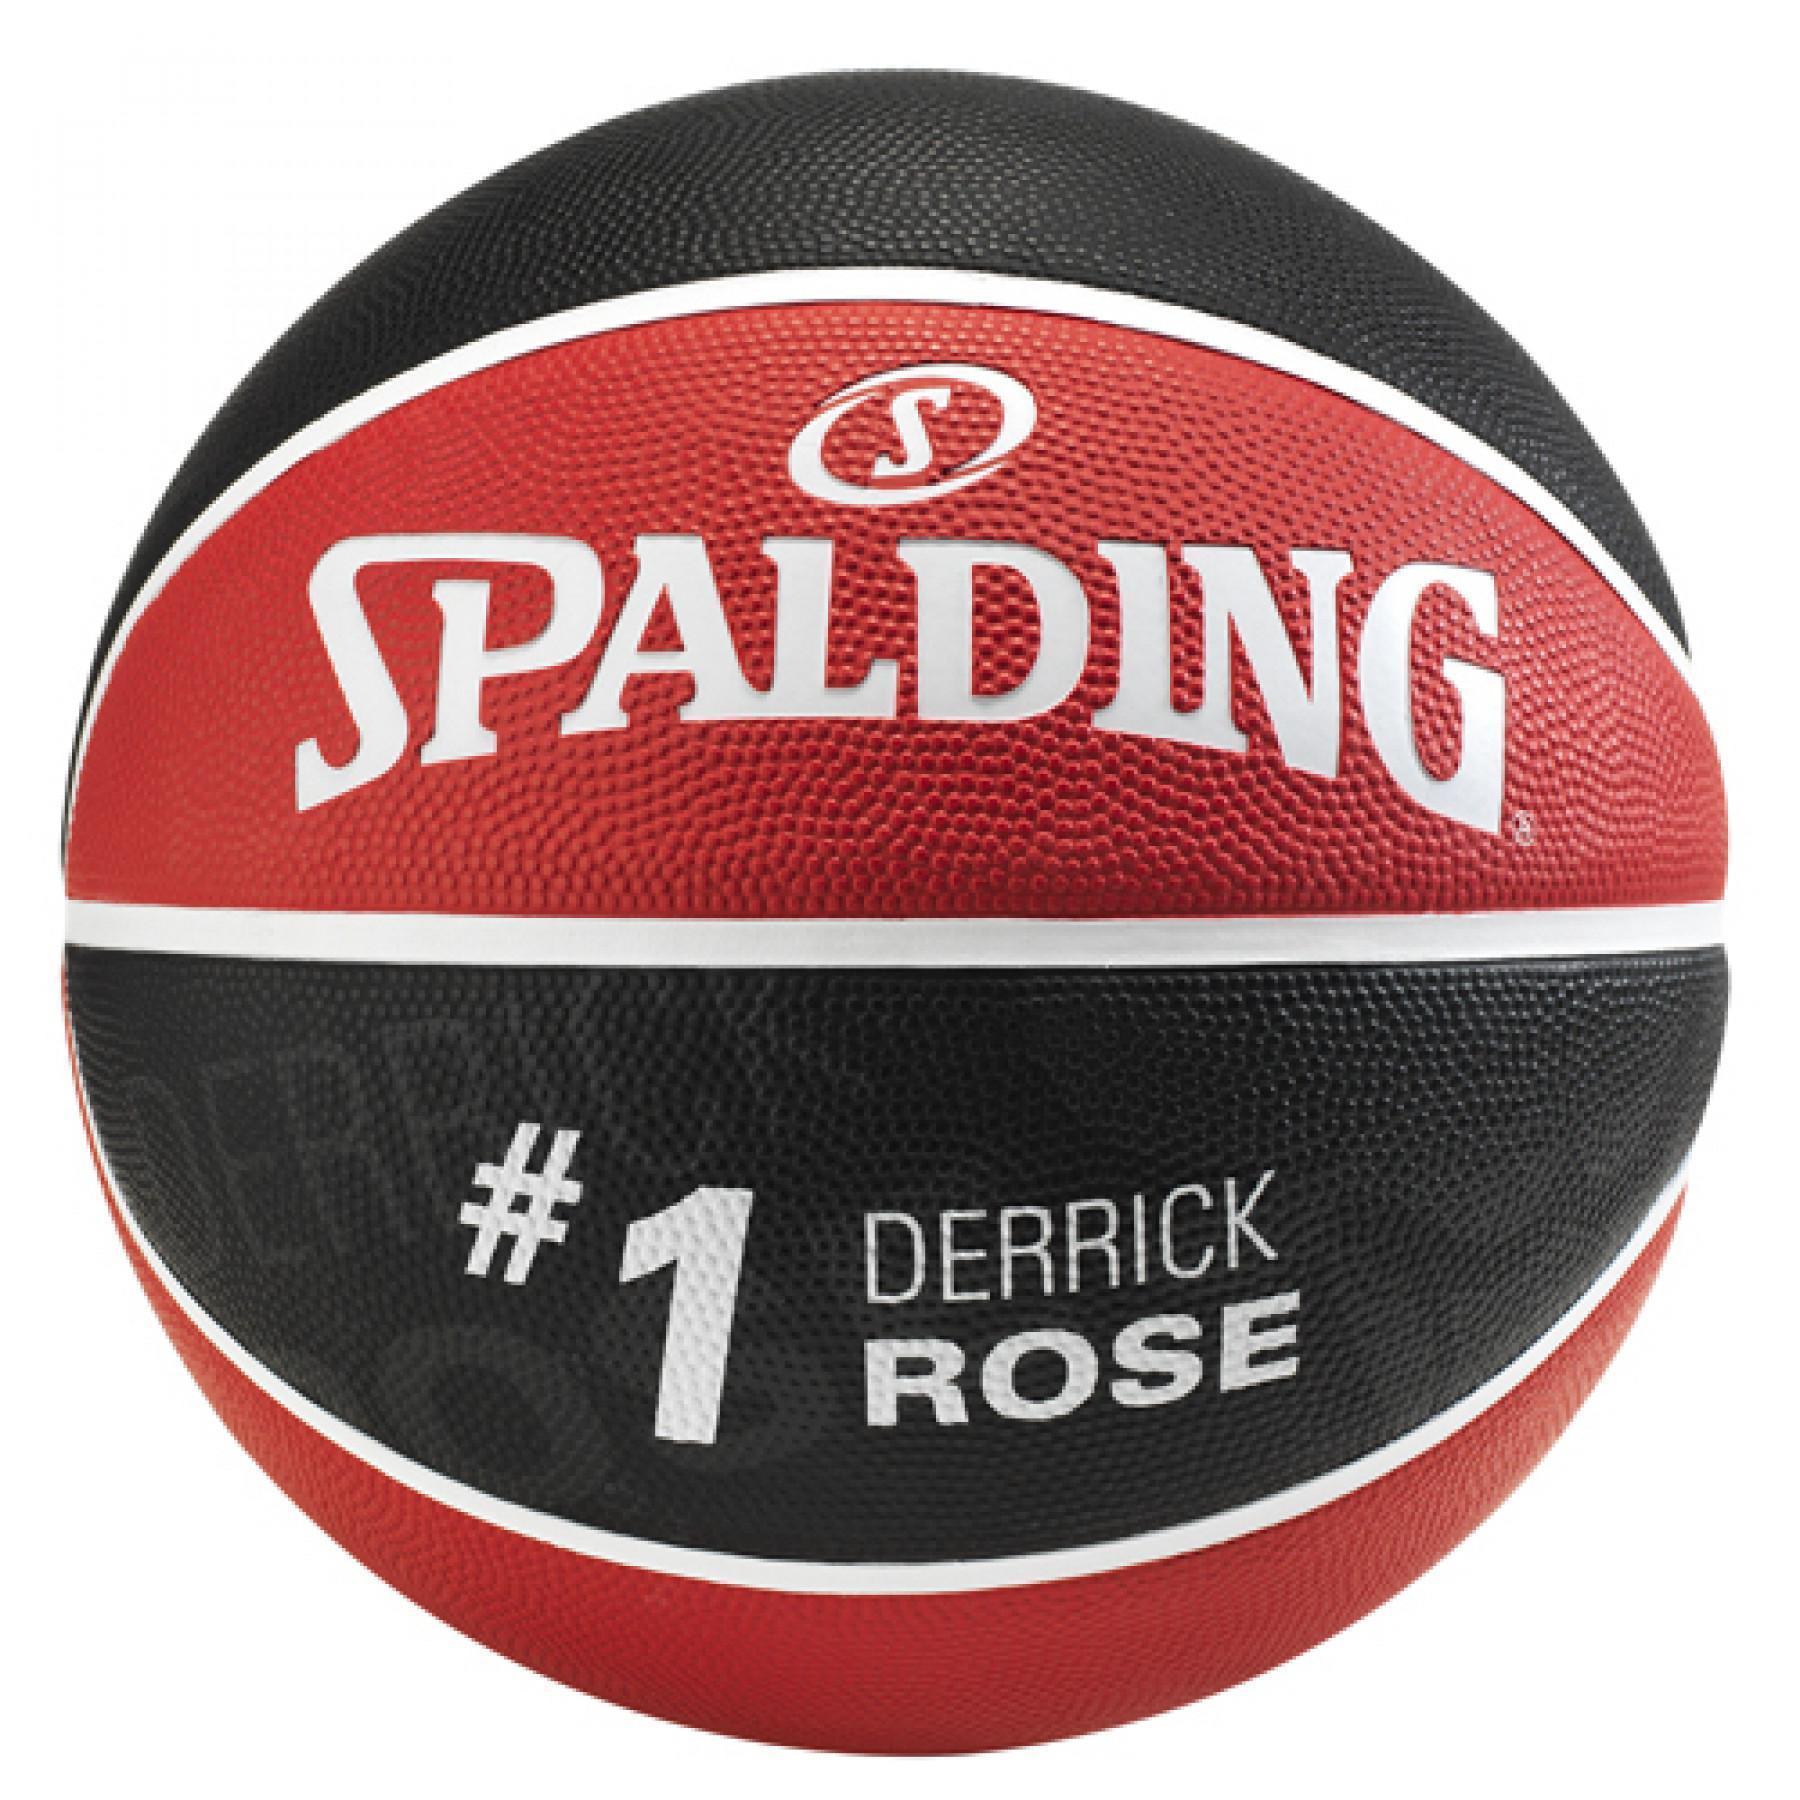 Ballong Spalding Player Derrick Rose